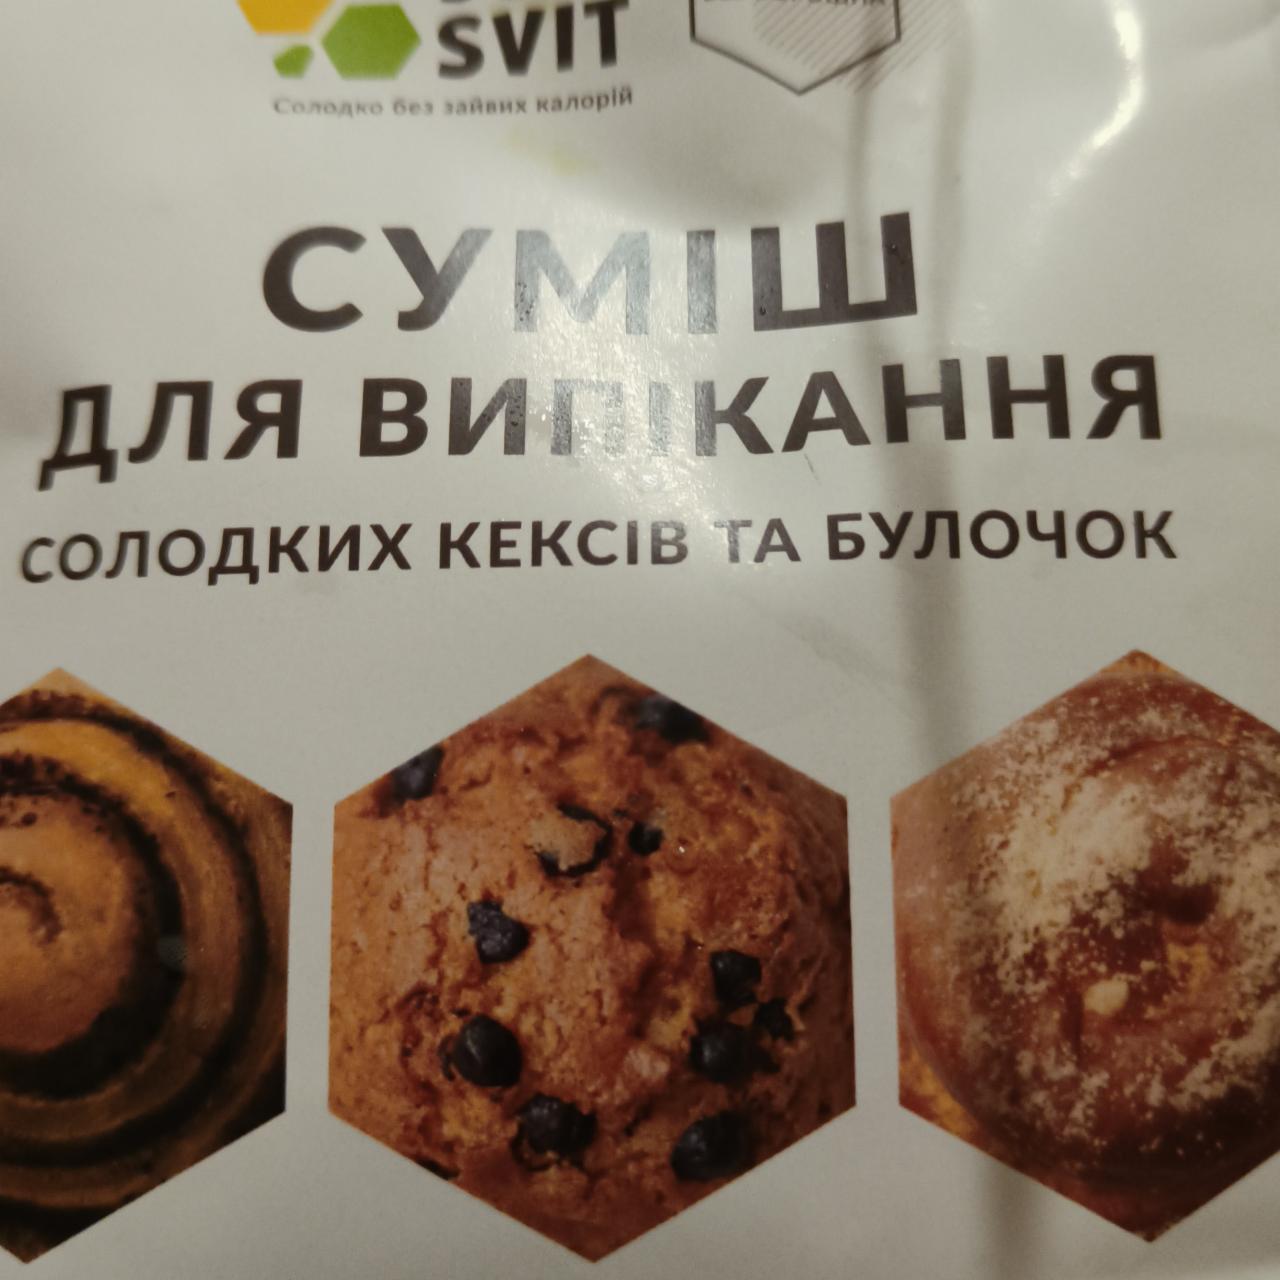 Фото - Смесь для выпечки сладких кексов и булочек SoloSvit